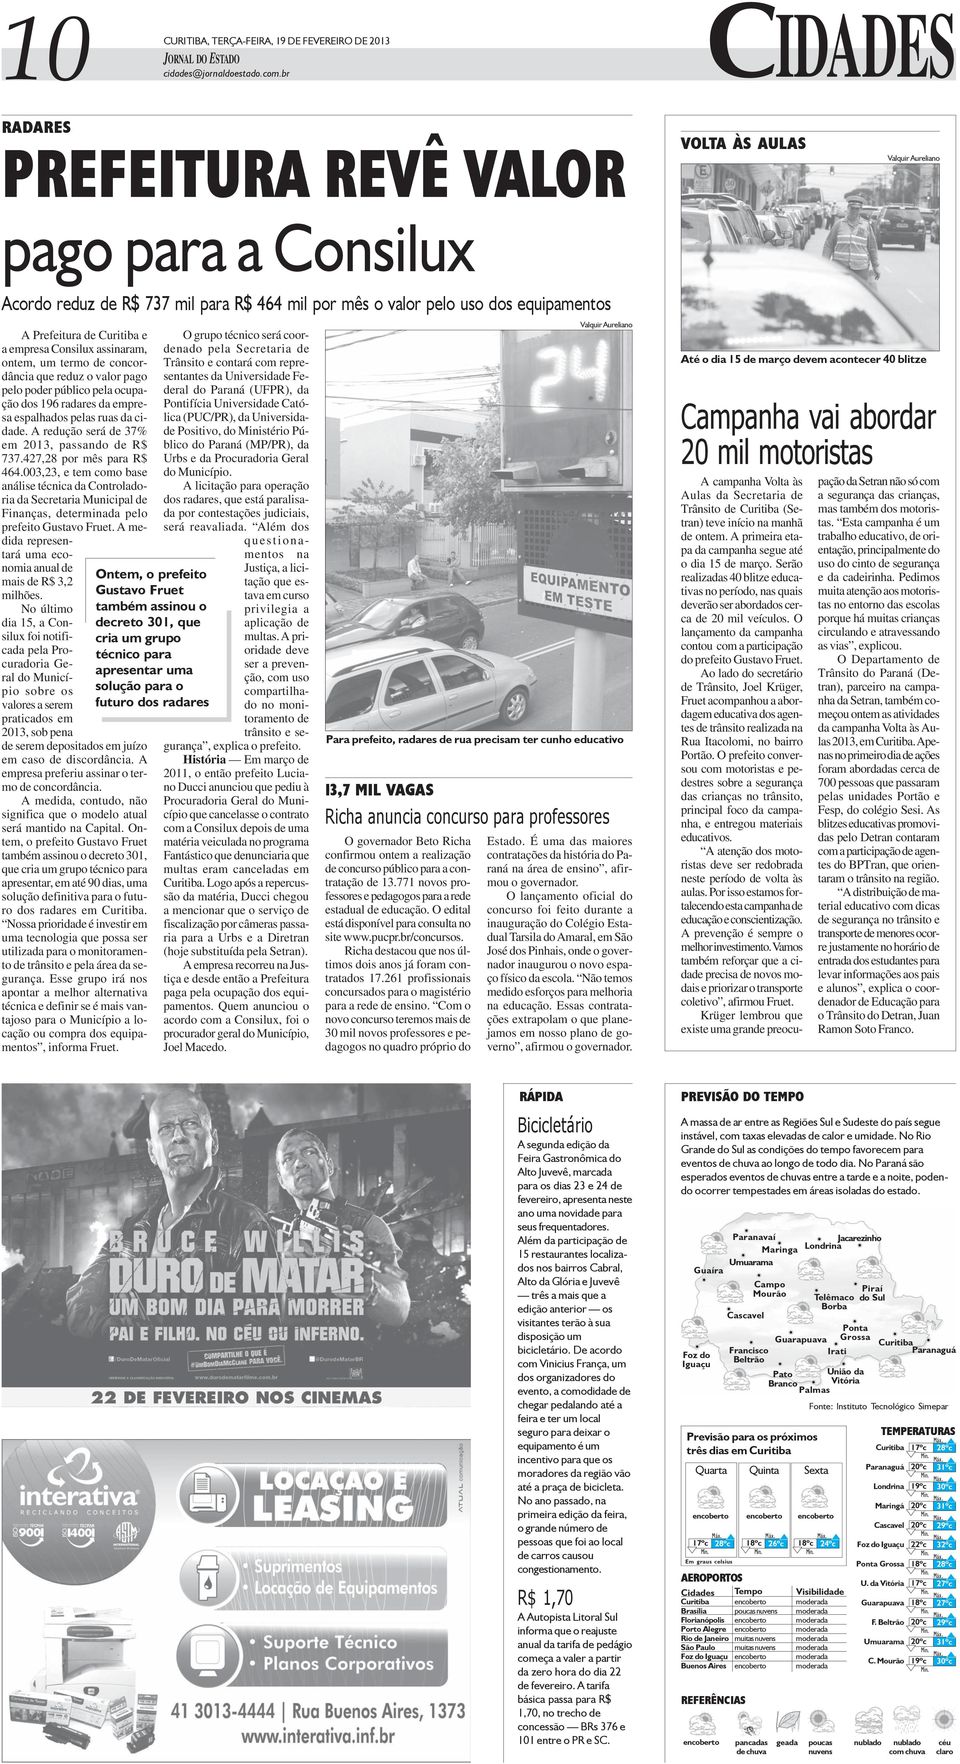 Curitiba e a empresa Consilux assinaram, ontem, um termo de concordância que reduz o valor pago pelo poder público pela ocupação dos 196 radares da empresa espalhados pelas ruas da cidade.